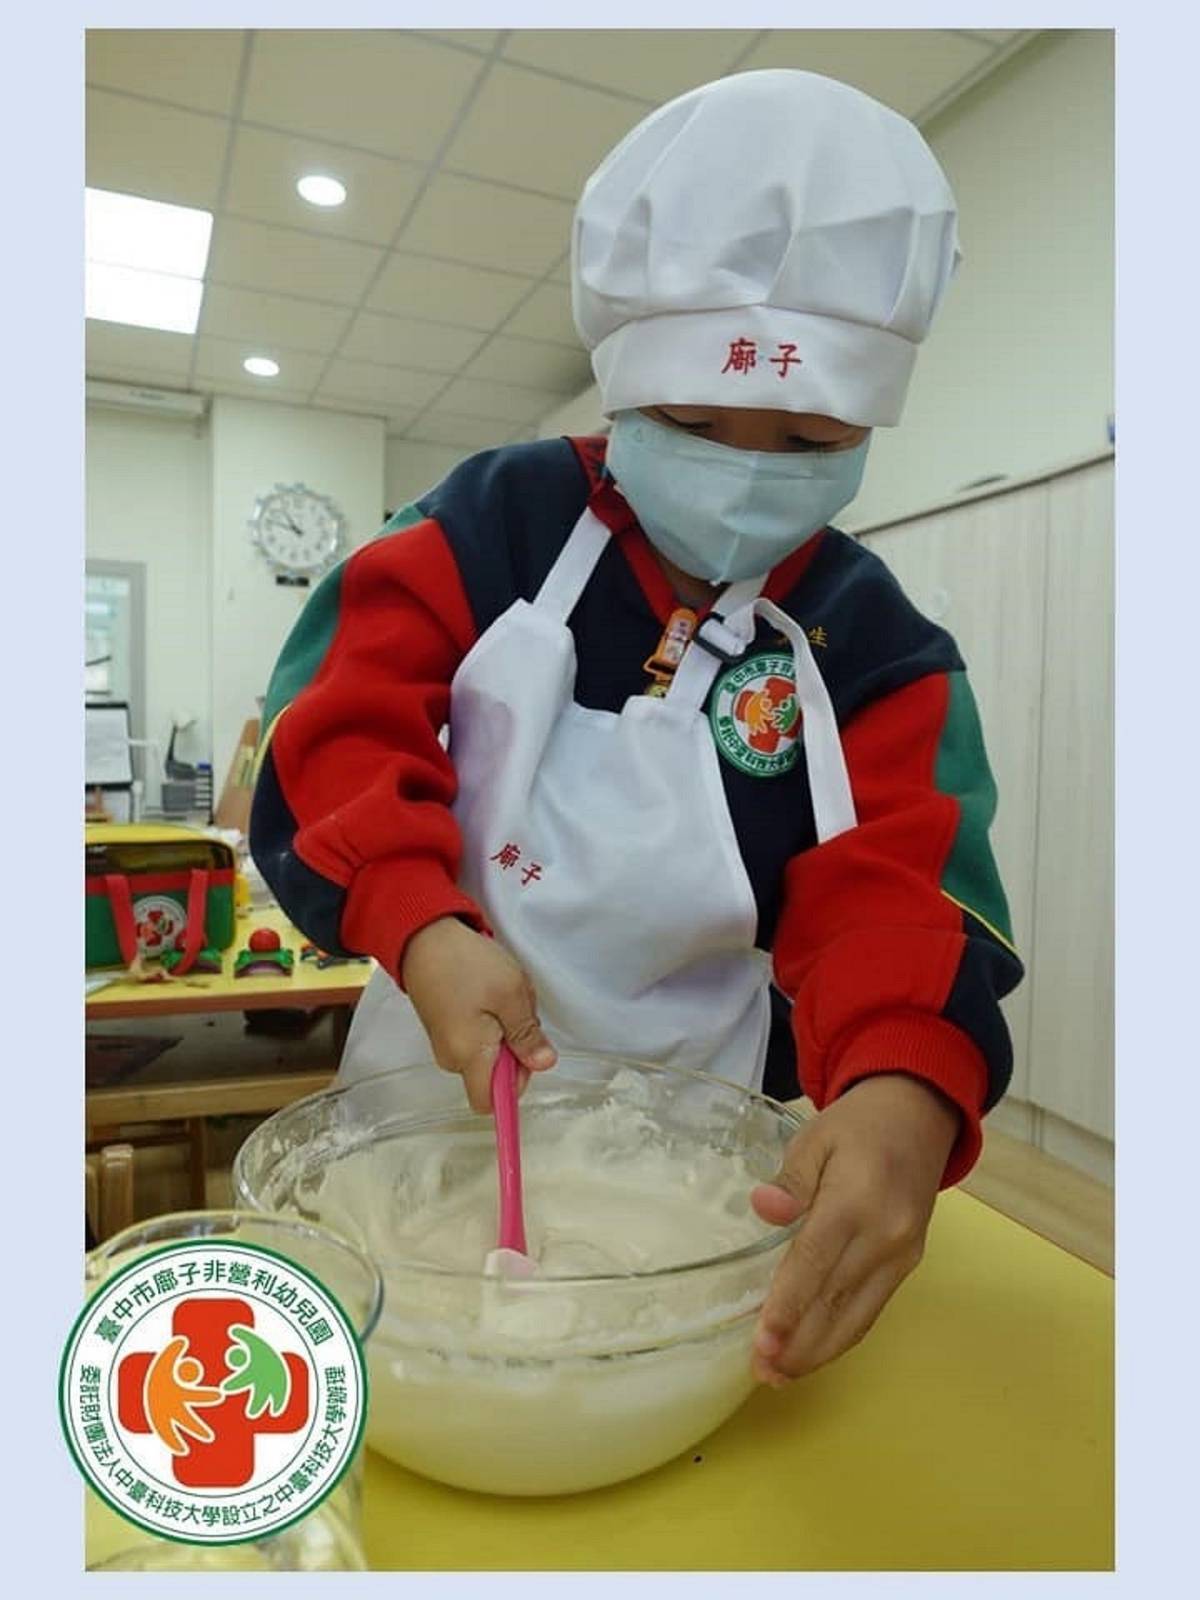 廍子非營利幼兒園的園區「小小廚師」體驗課程